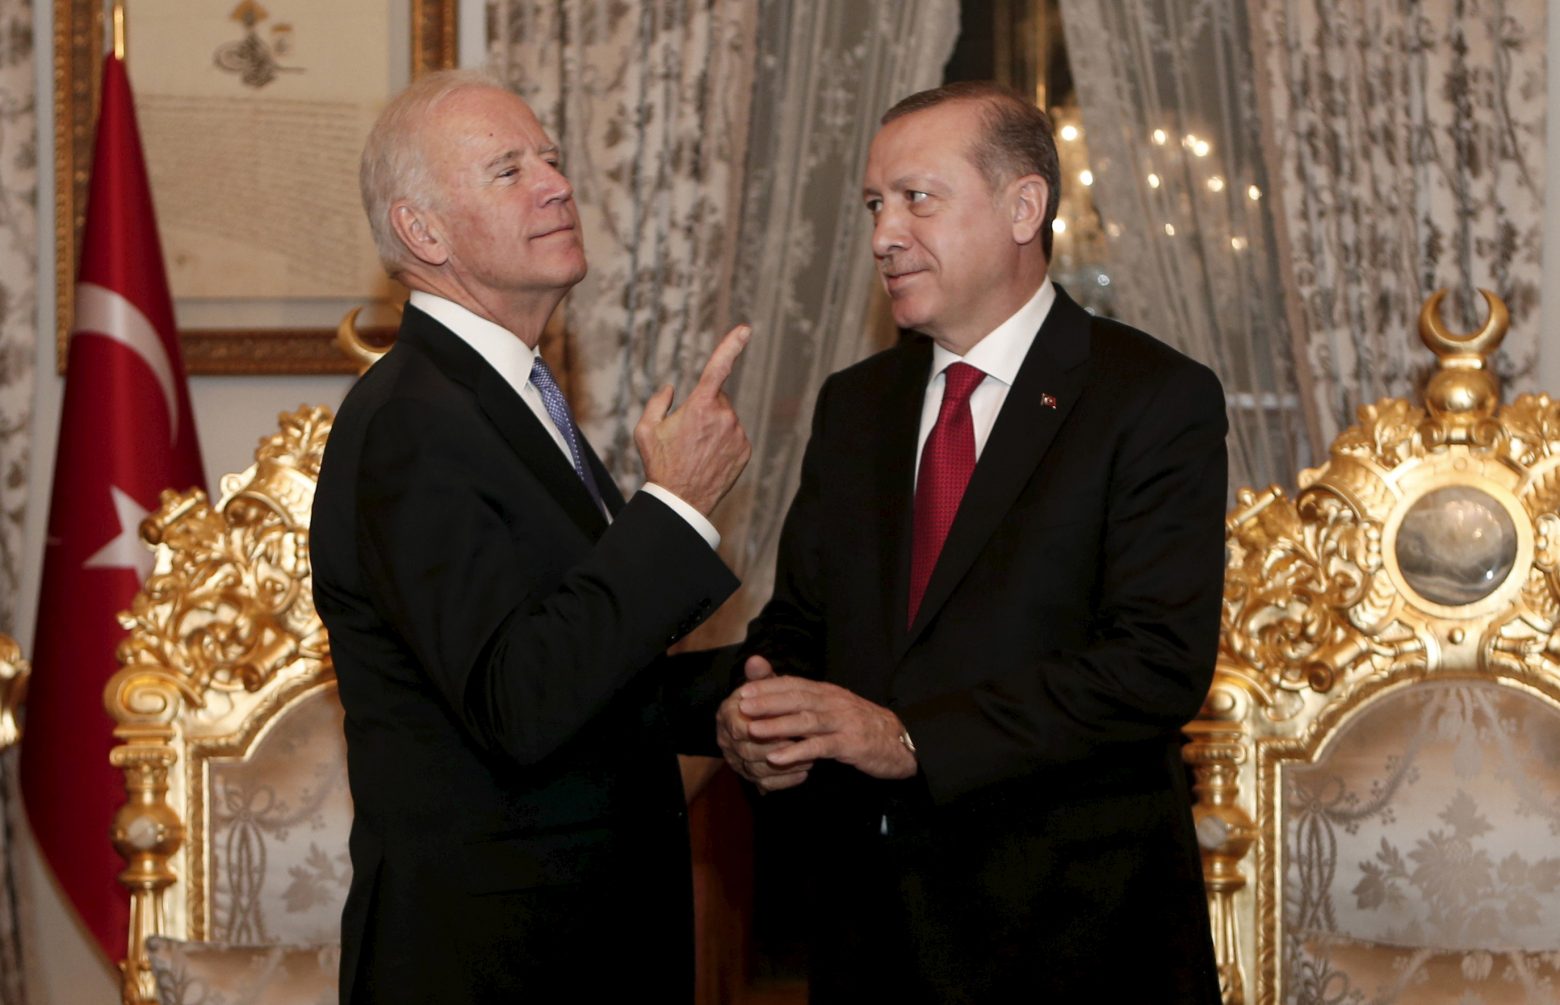 Τουρκία – «Κλείδωσε» η συνάντηση Ερντογάν – Μπάιντεν λέει ο Ιμπραχίμ Καλίν